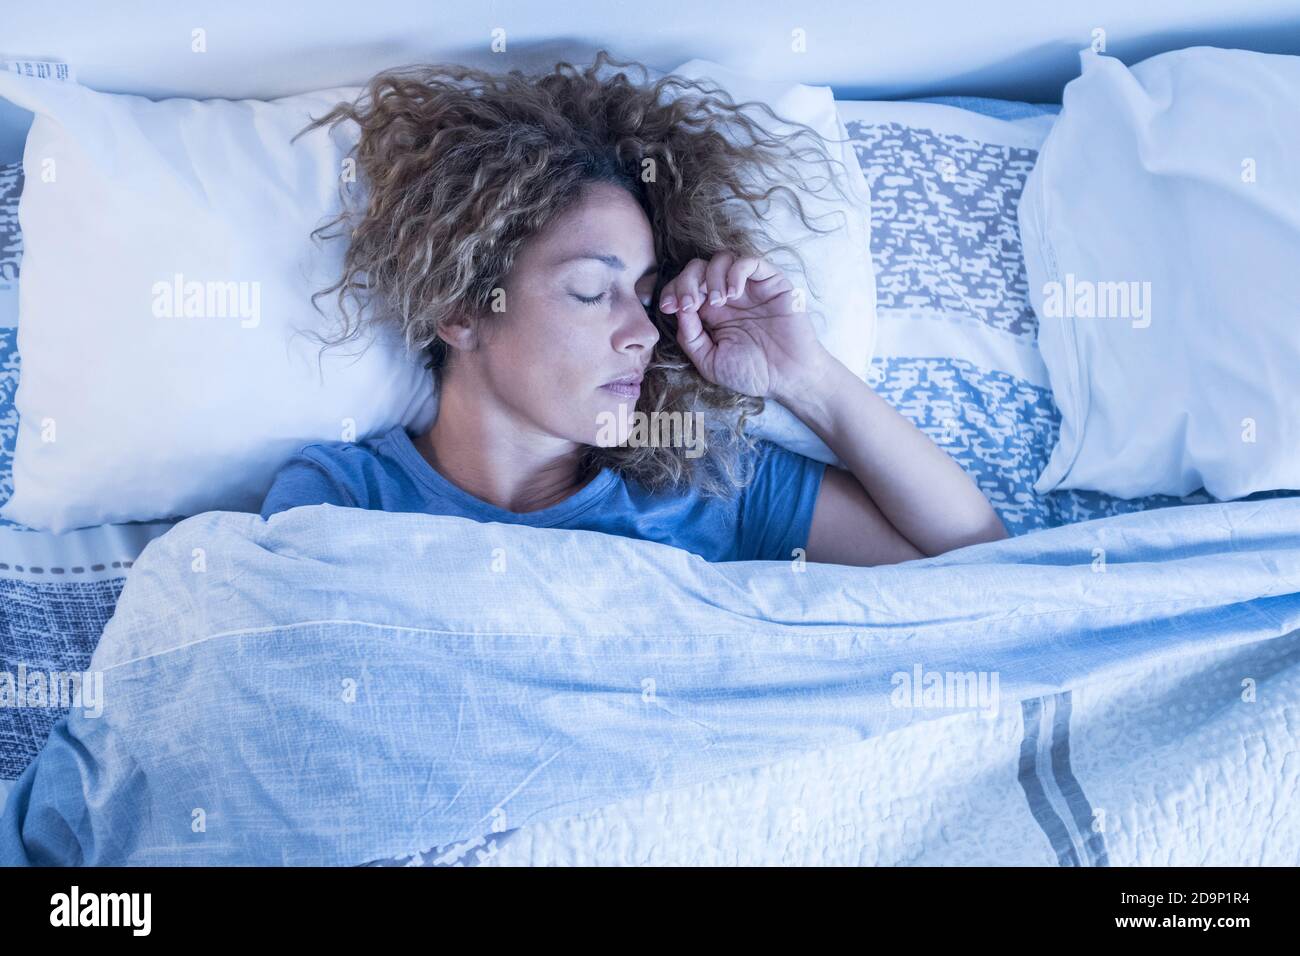 Schöne Erwachsene kaukasische einsame Frau schlafen allein in einem Doppel Bett zu Hause - Konzept der Unabhängigkeit und Porträt von Menschen schlafen und entspannen - morgens aufwachen Konzept Stockfoto